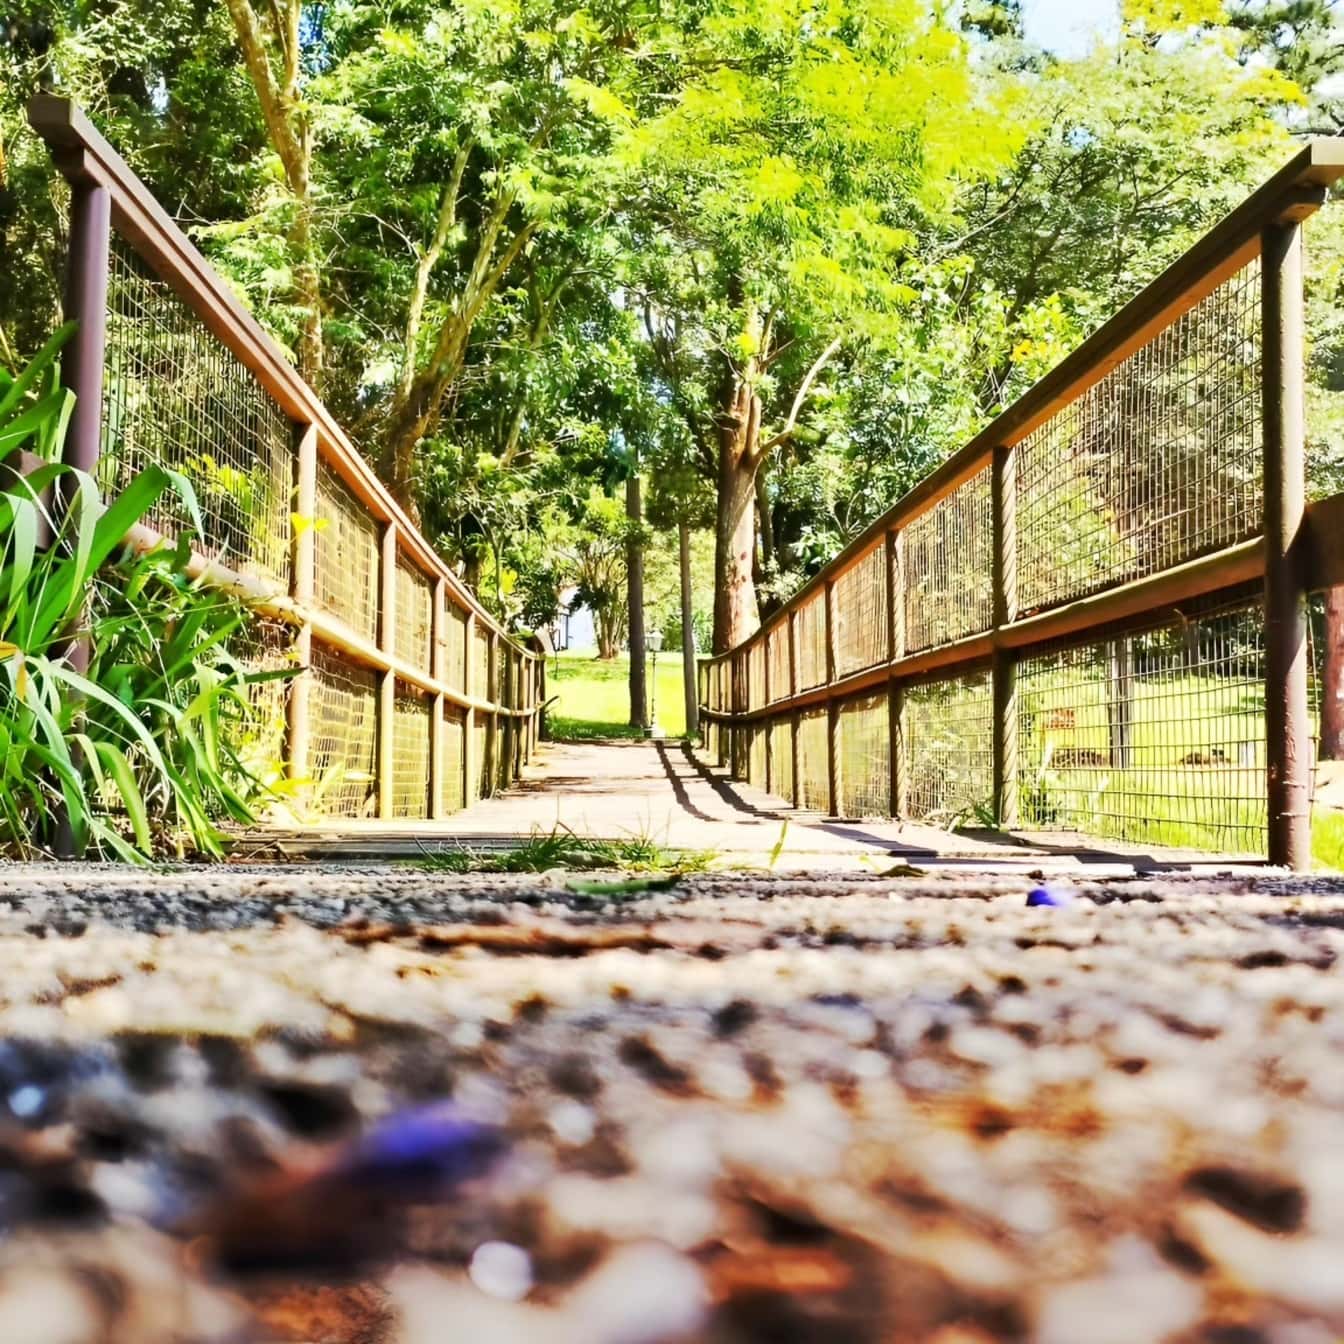 Botanik parkında çitli ahşap yaya köprüsüne giden yol